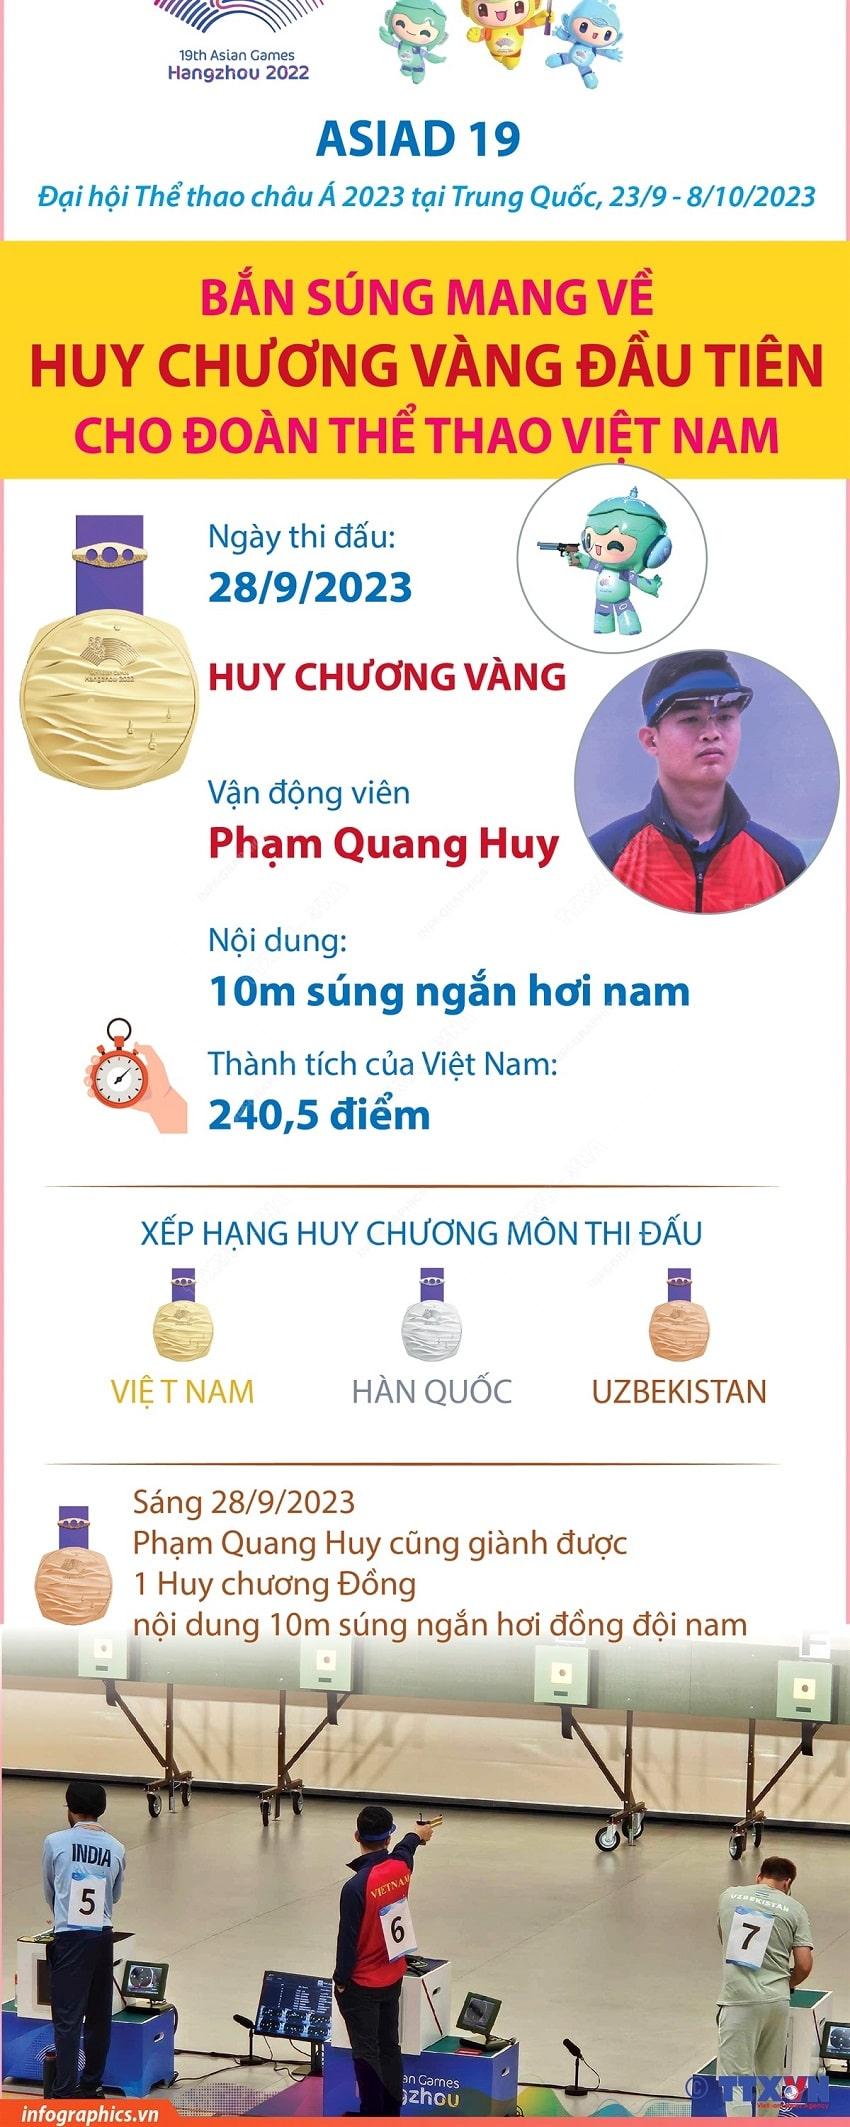 Ban sung gianh Huy chuong Vang dau tien cho Doan The thao Viet Nam min - Infographics: Bắn súng giành Huy chương Vàng đầu tiên cho Đoàn Thể thao Việt Nam